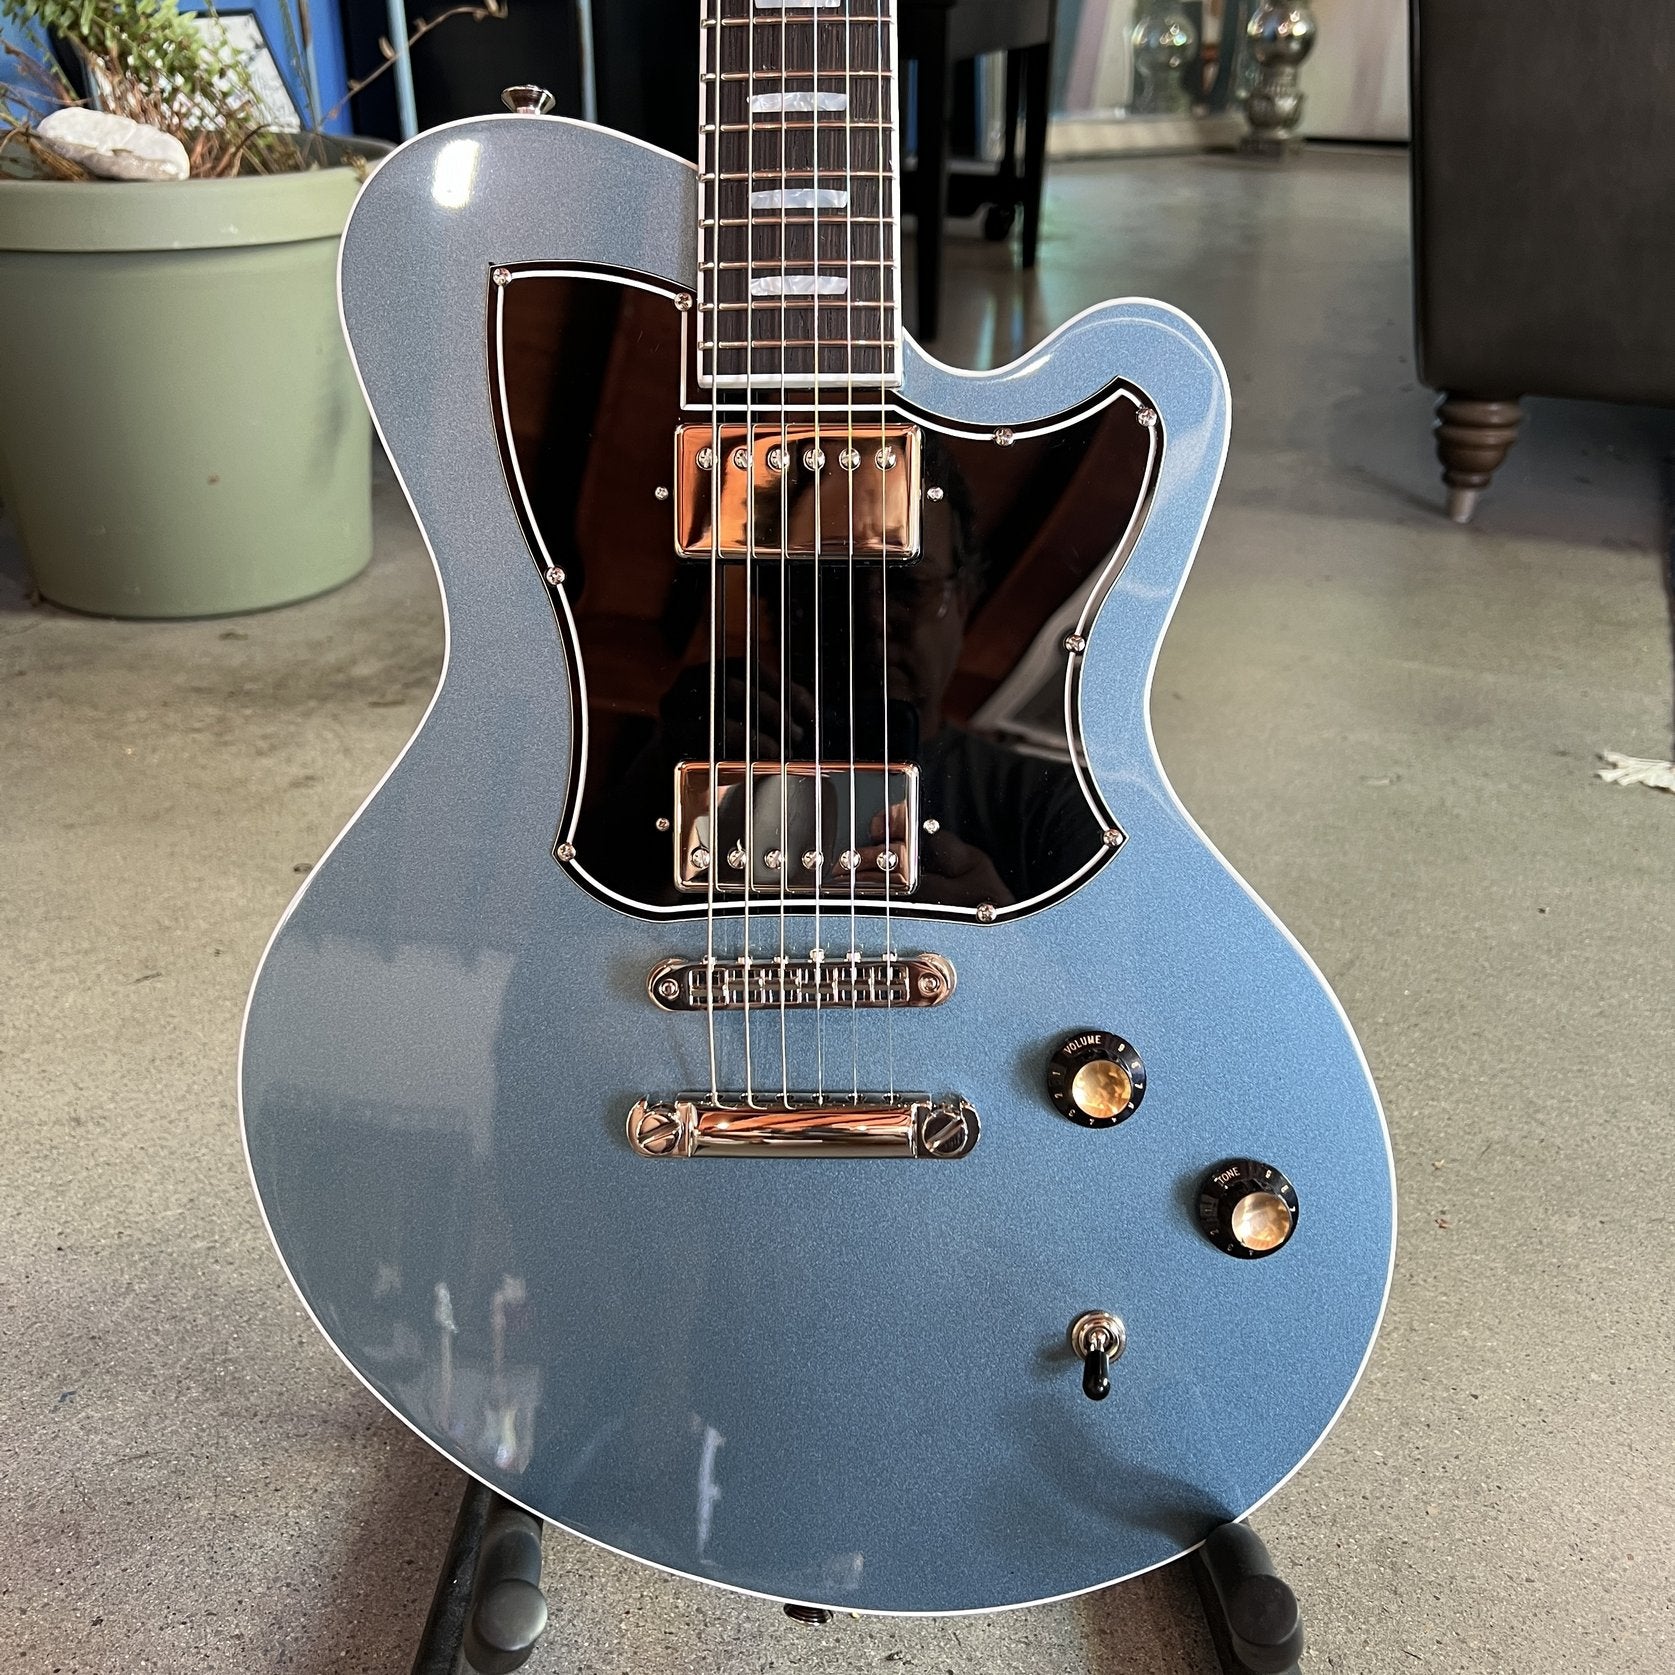 Kauer Guitars Starliner Express, Pelham Blue - #1026-178